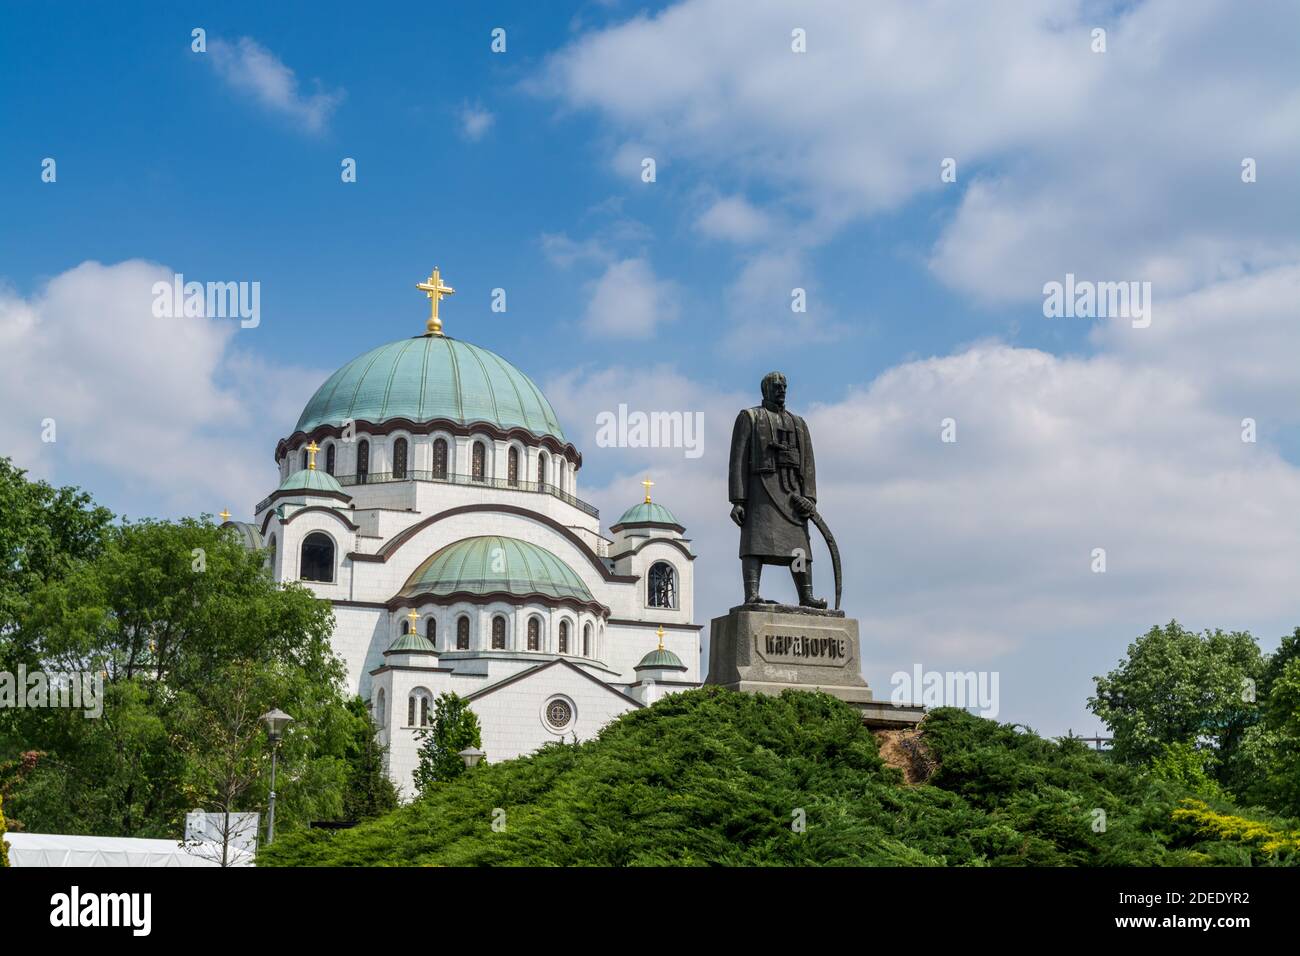 Statua di Karadjordje contro il cielo blu e la chiesa di San Sava, una chiesa ortodossa serba situata a Belgrado, Serbia Foto Stock